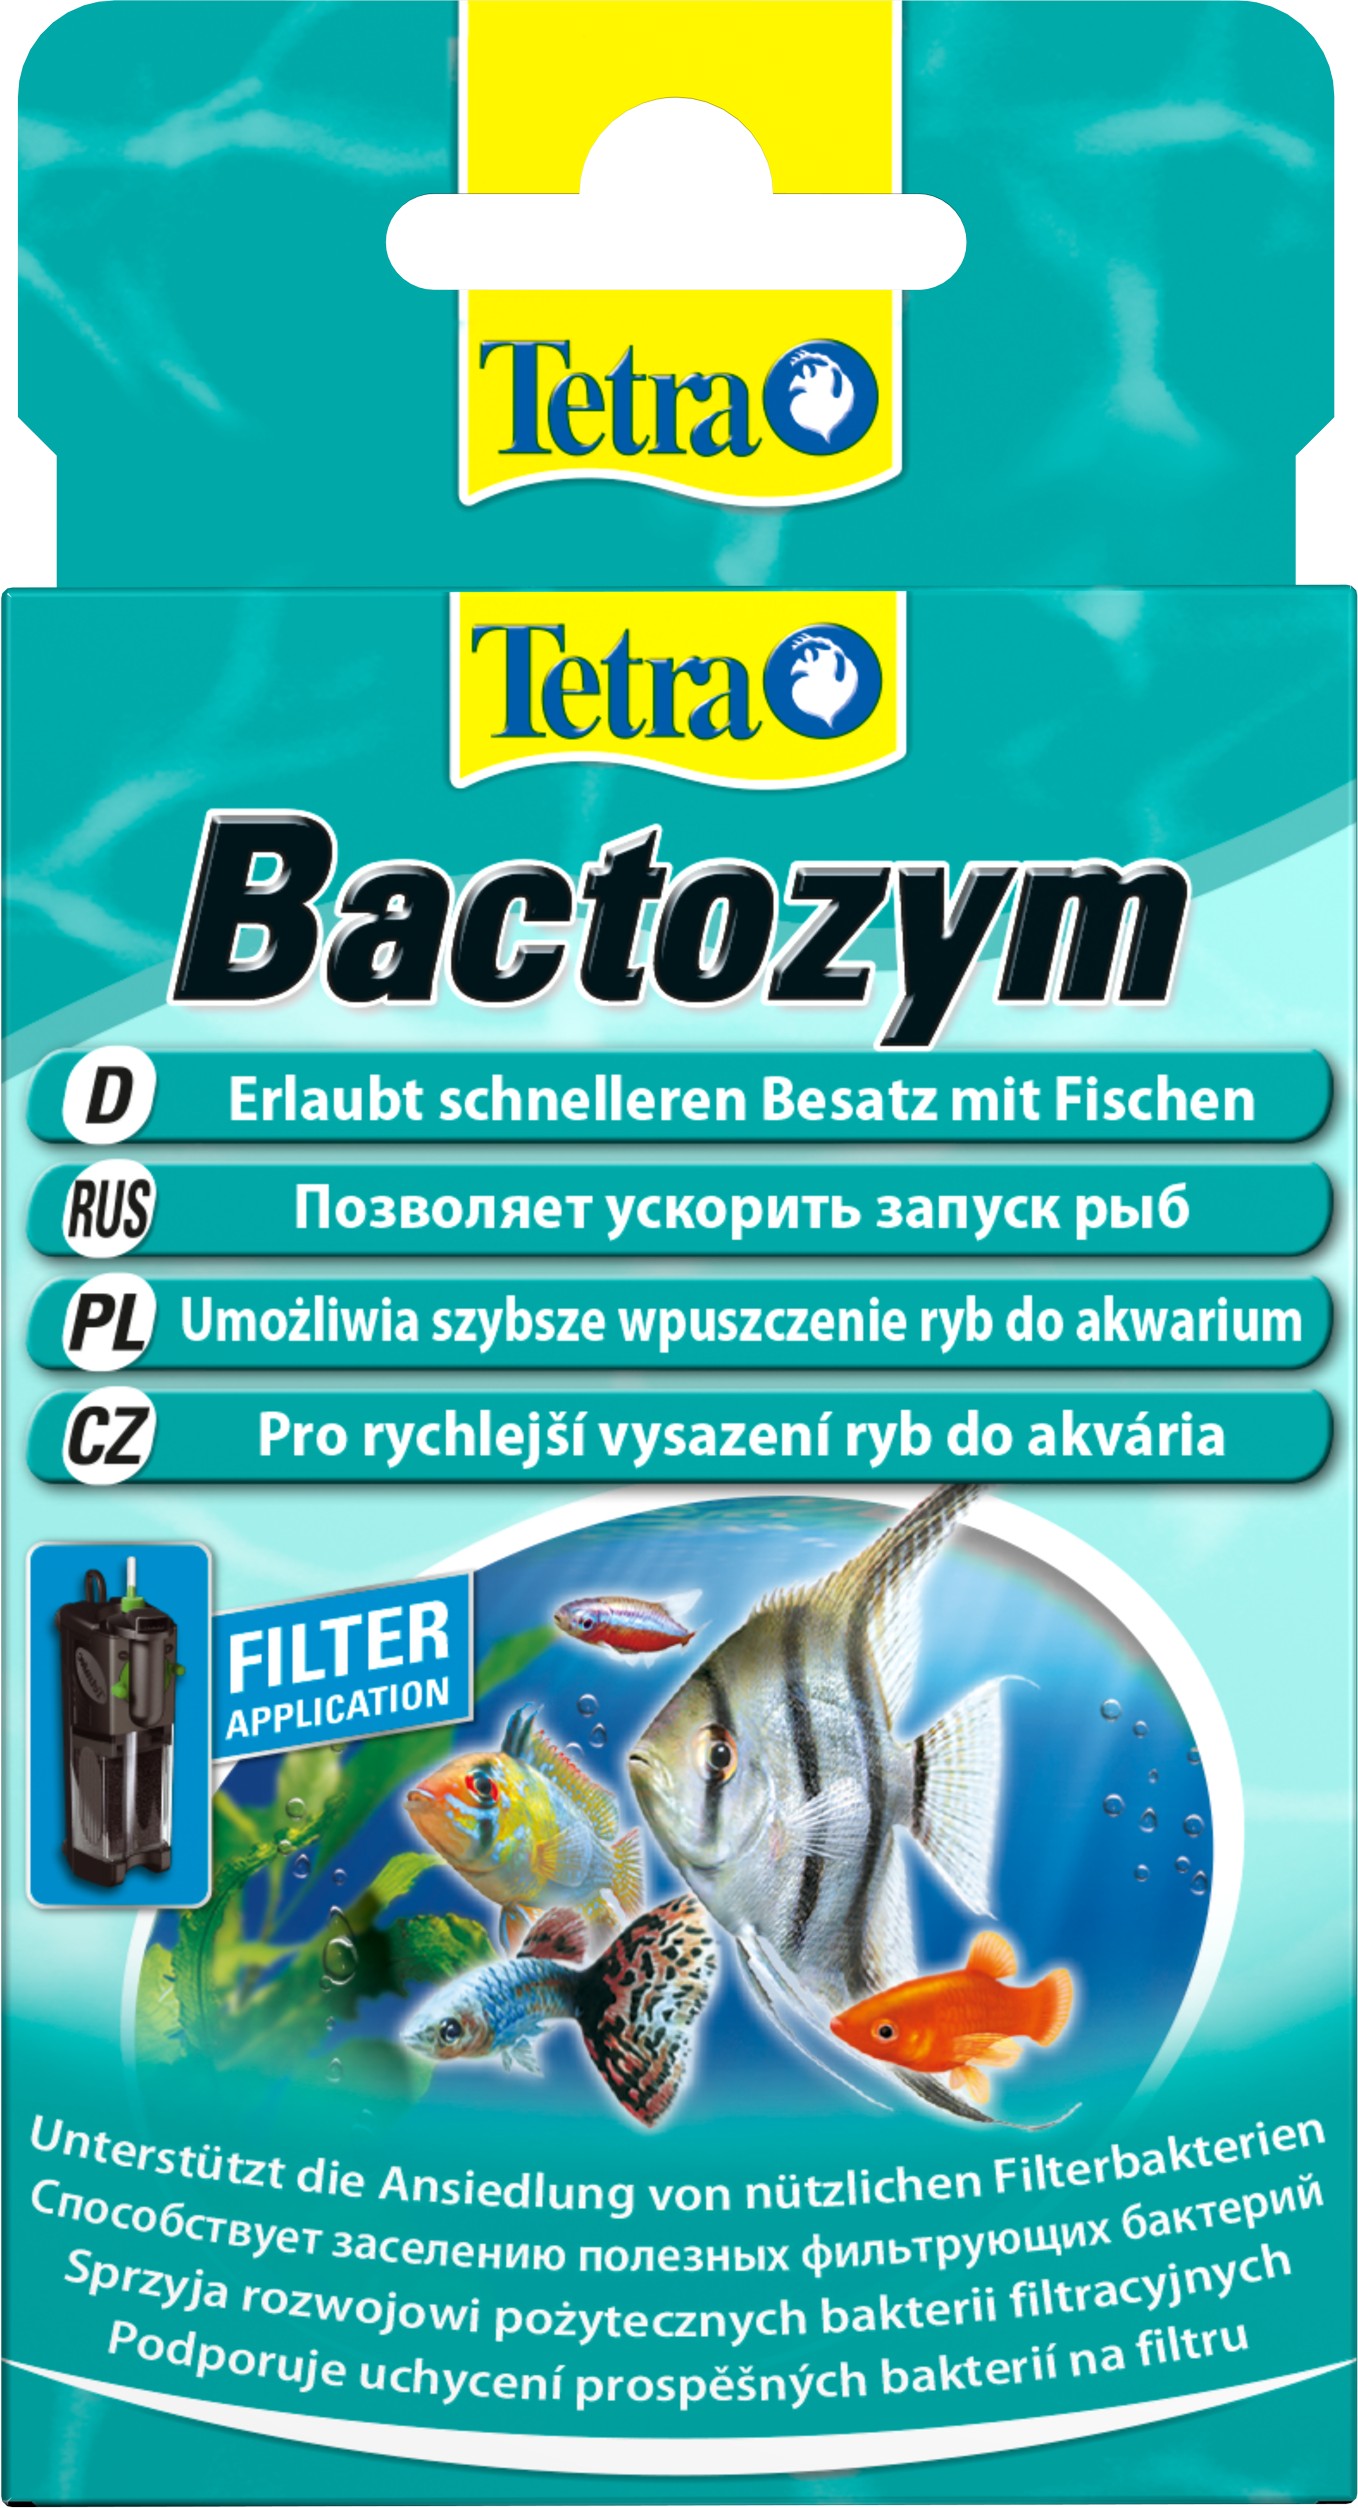 Фото - Прочее для аквариумов Tetra Засіб для стабілізації біологічної рівноваги в акваріумі  Bactozym, 1 